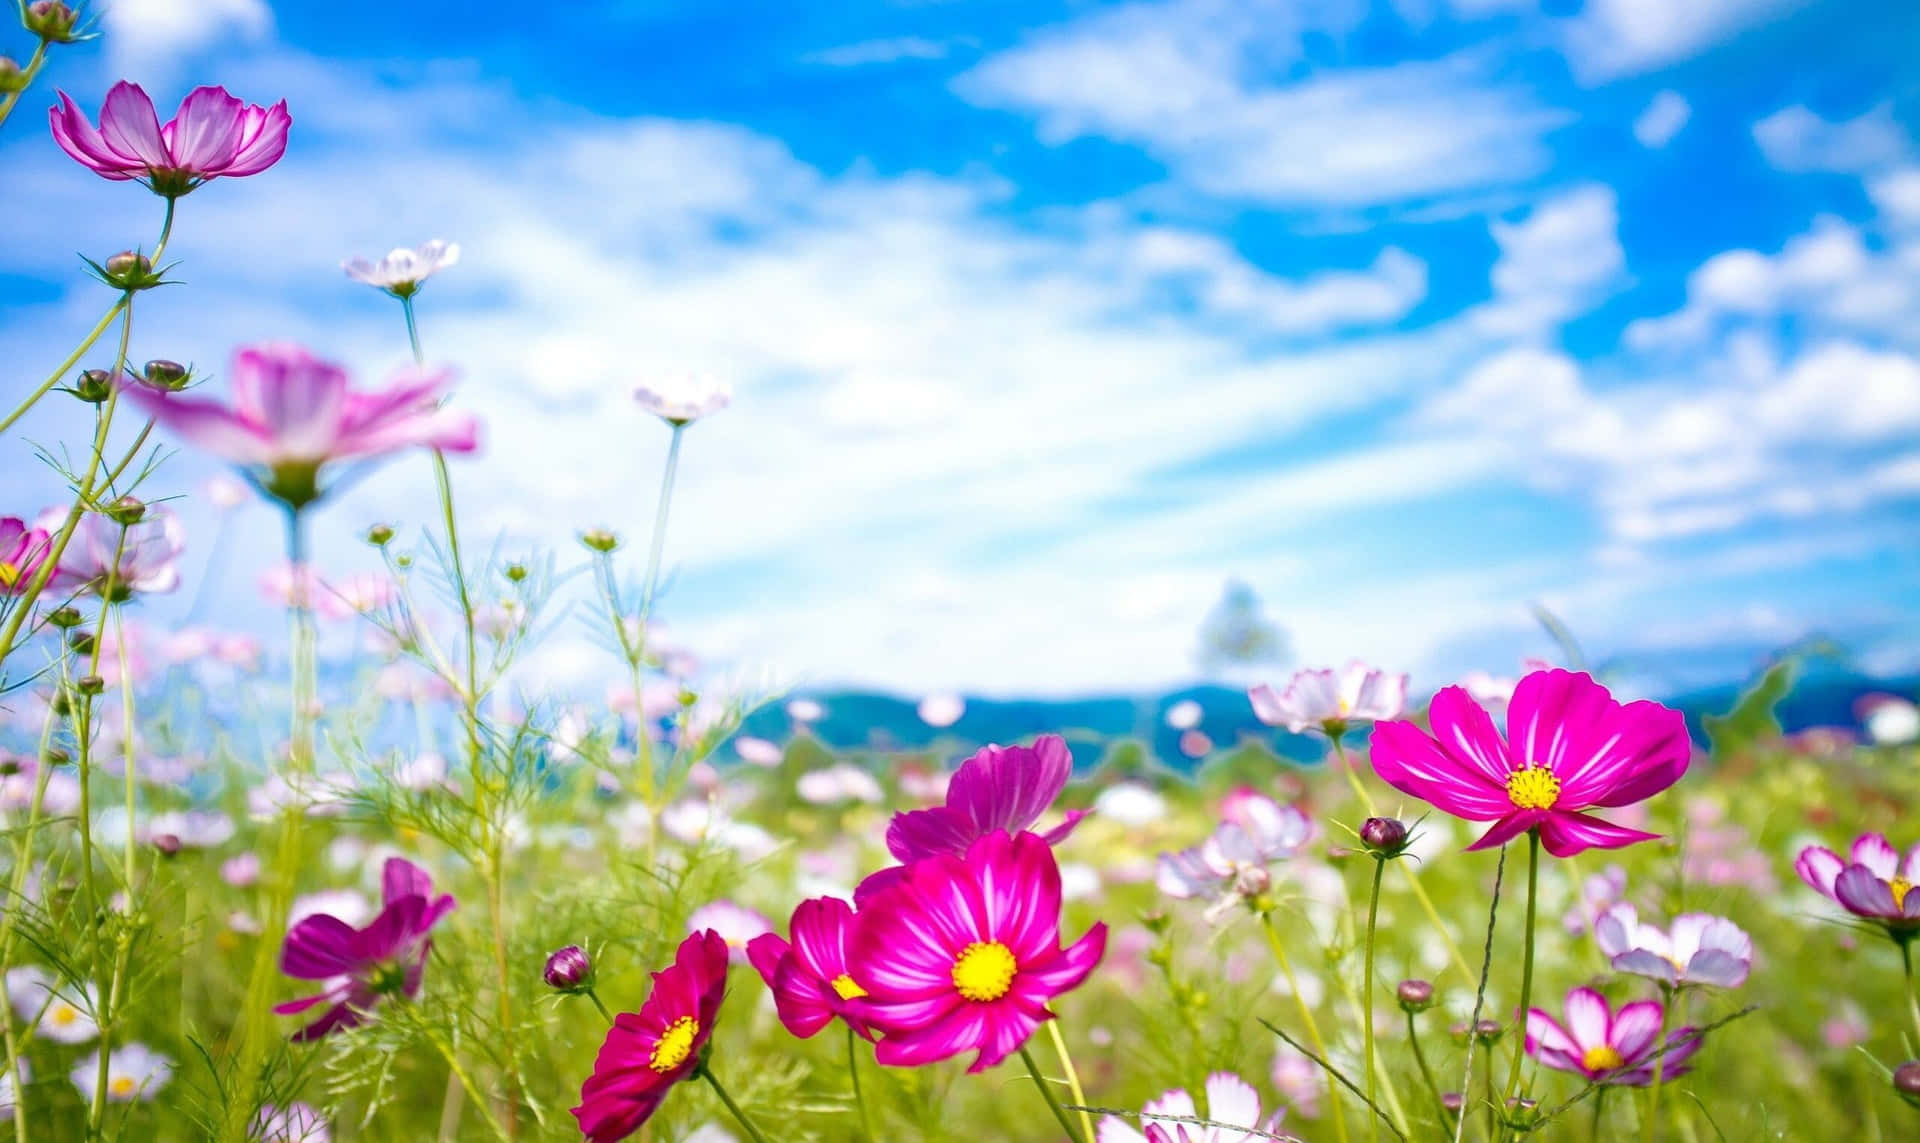 Hellensie Ihren Tag Mit Einem Blumen-desktop-hintergrund Auf